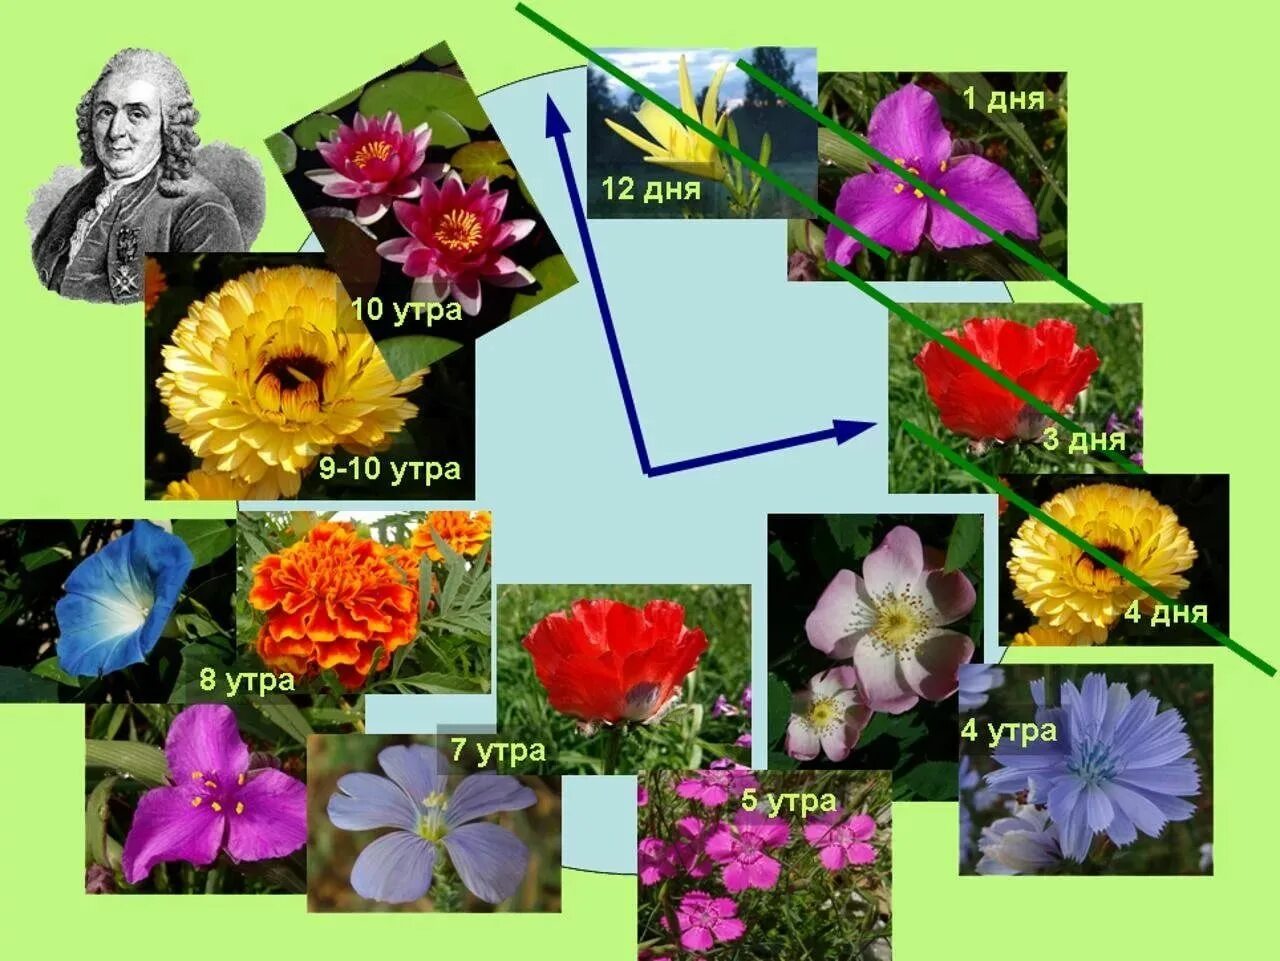 Разные цветы точно по времени